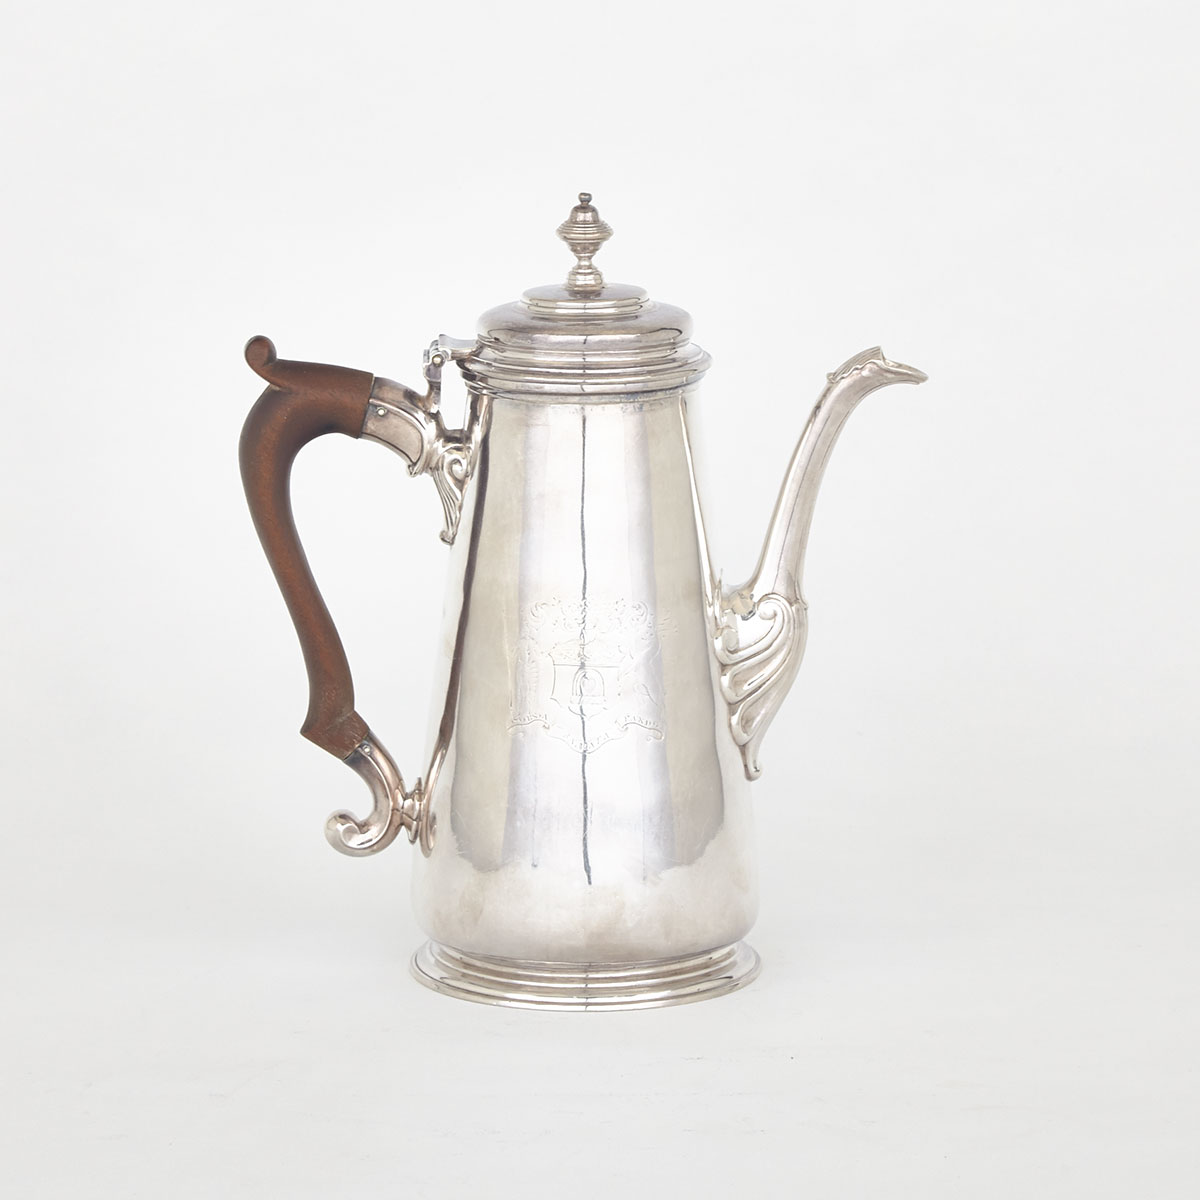 George II Silver Coffee Pot, John Barbe, London, 1737